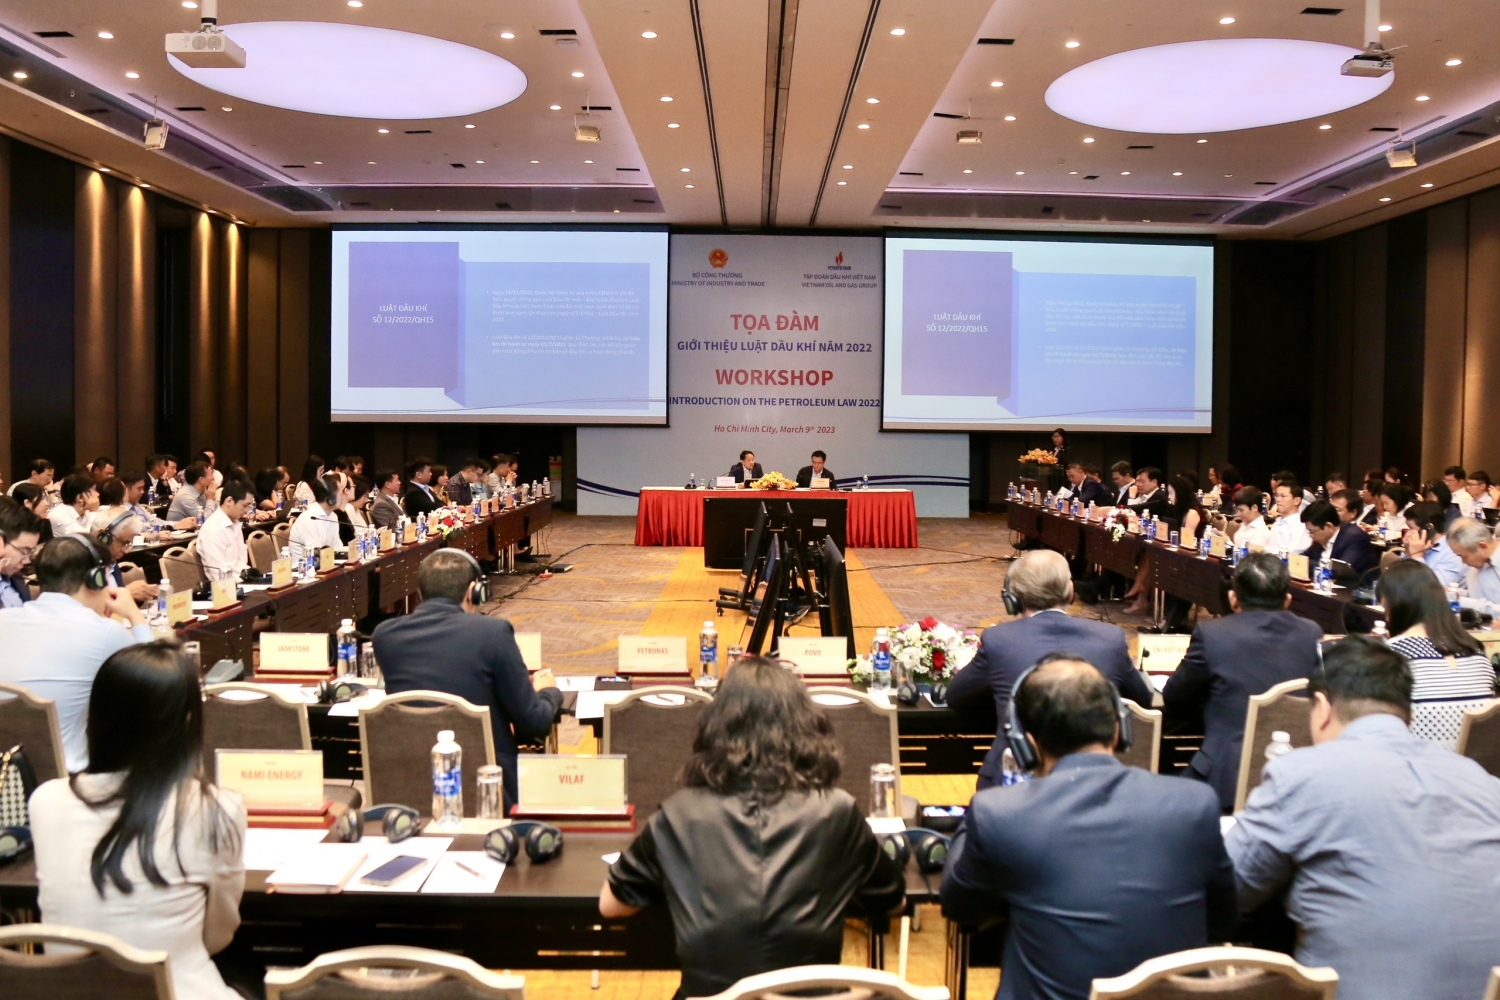 Bộ Công Thương và Petrovietnam tổ chức tọa đàm giới thiệu Luật Dầu khí năm 2022 đến các nhà thầu Dầu khí”